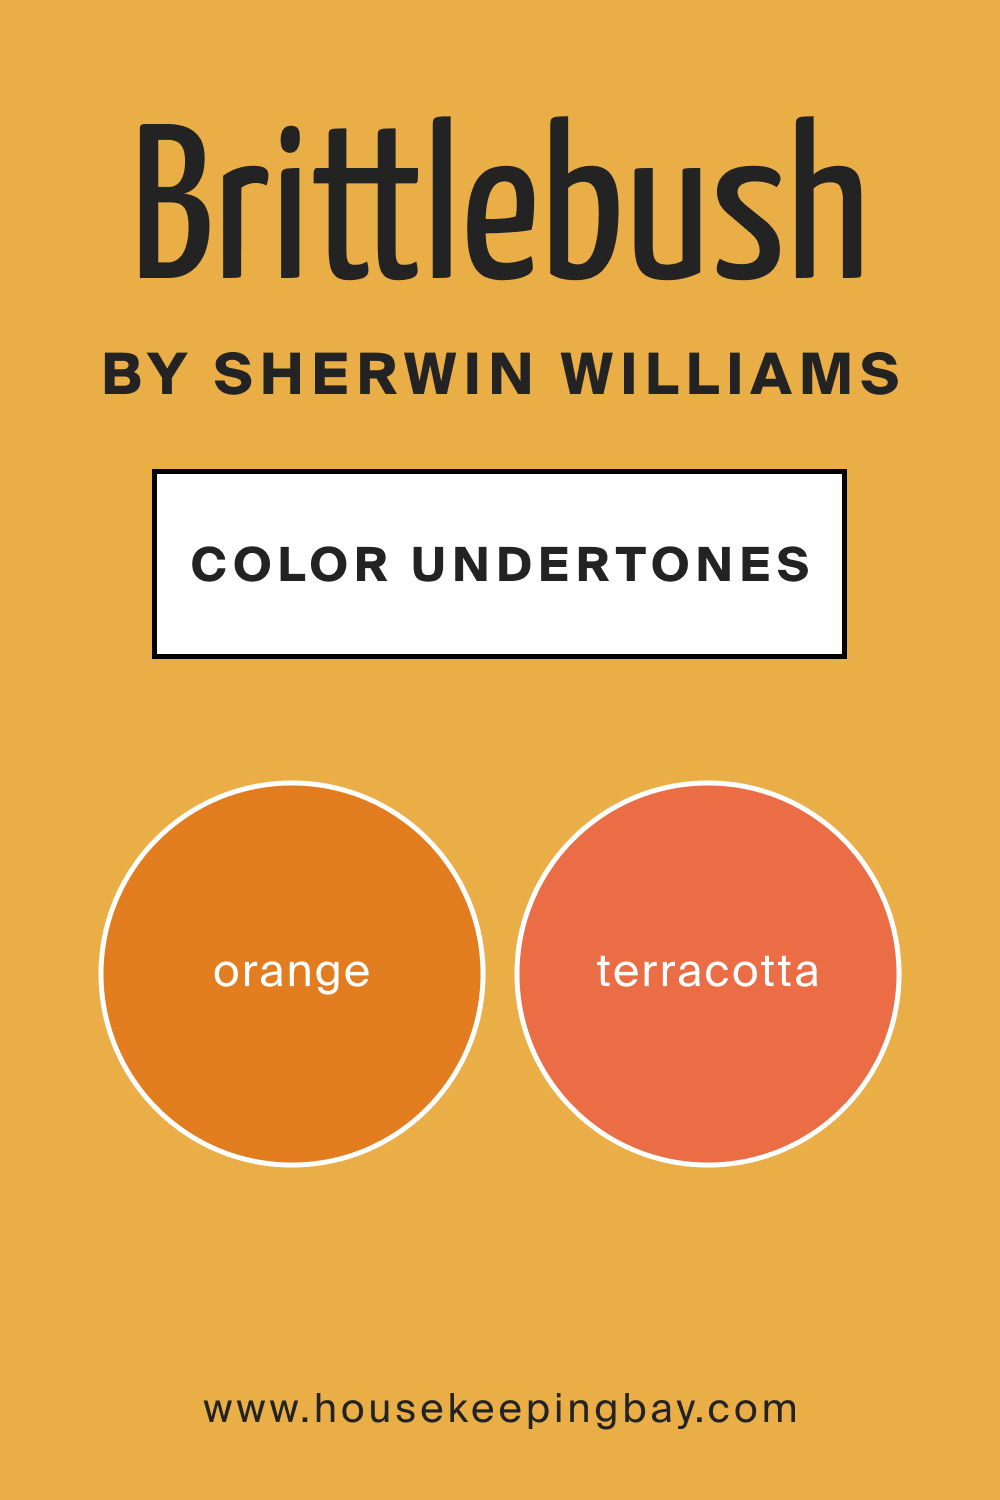 Brittlebush SW 6684 by Sherwin Williams Color Undertone